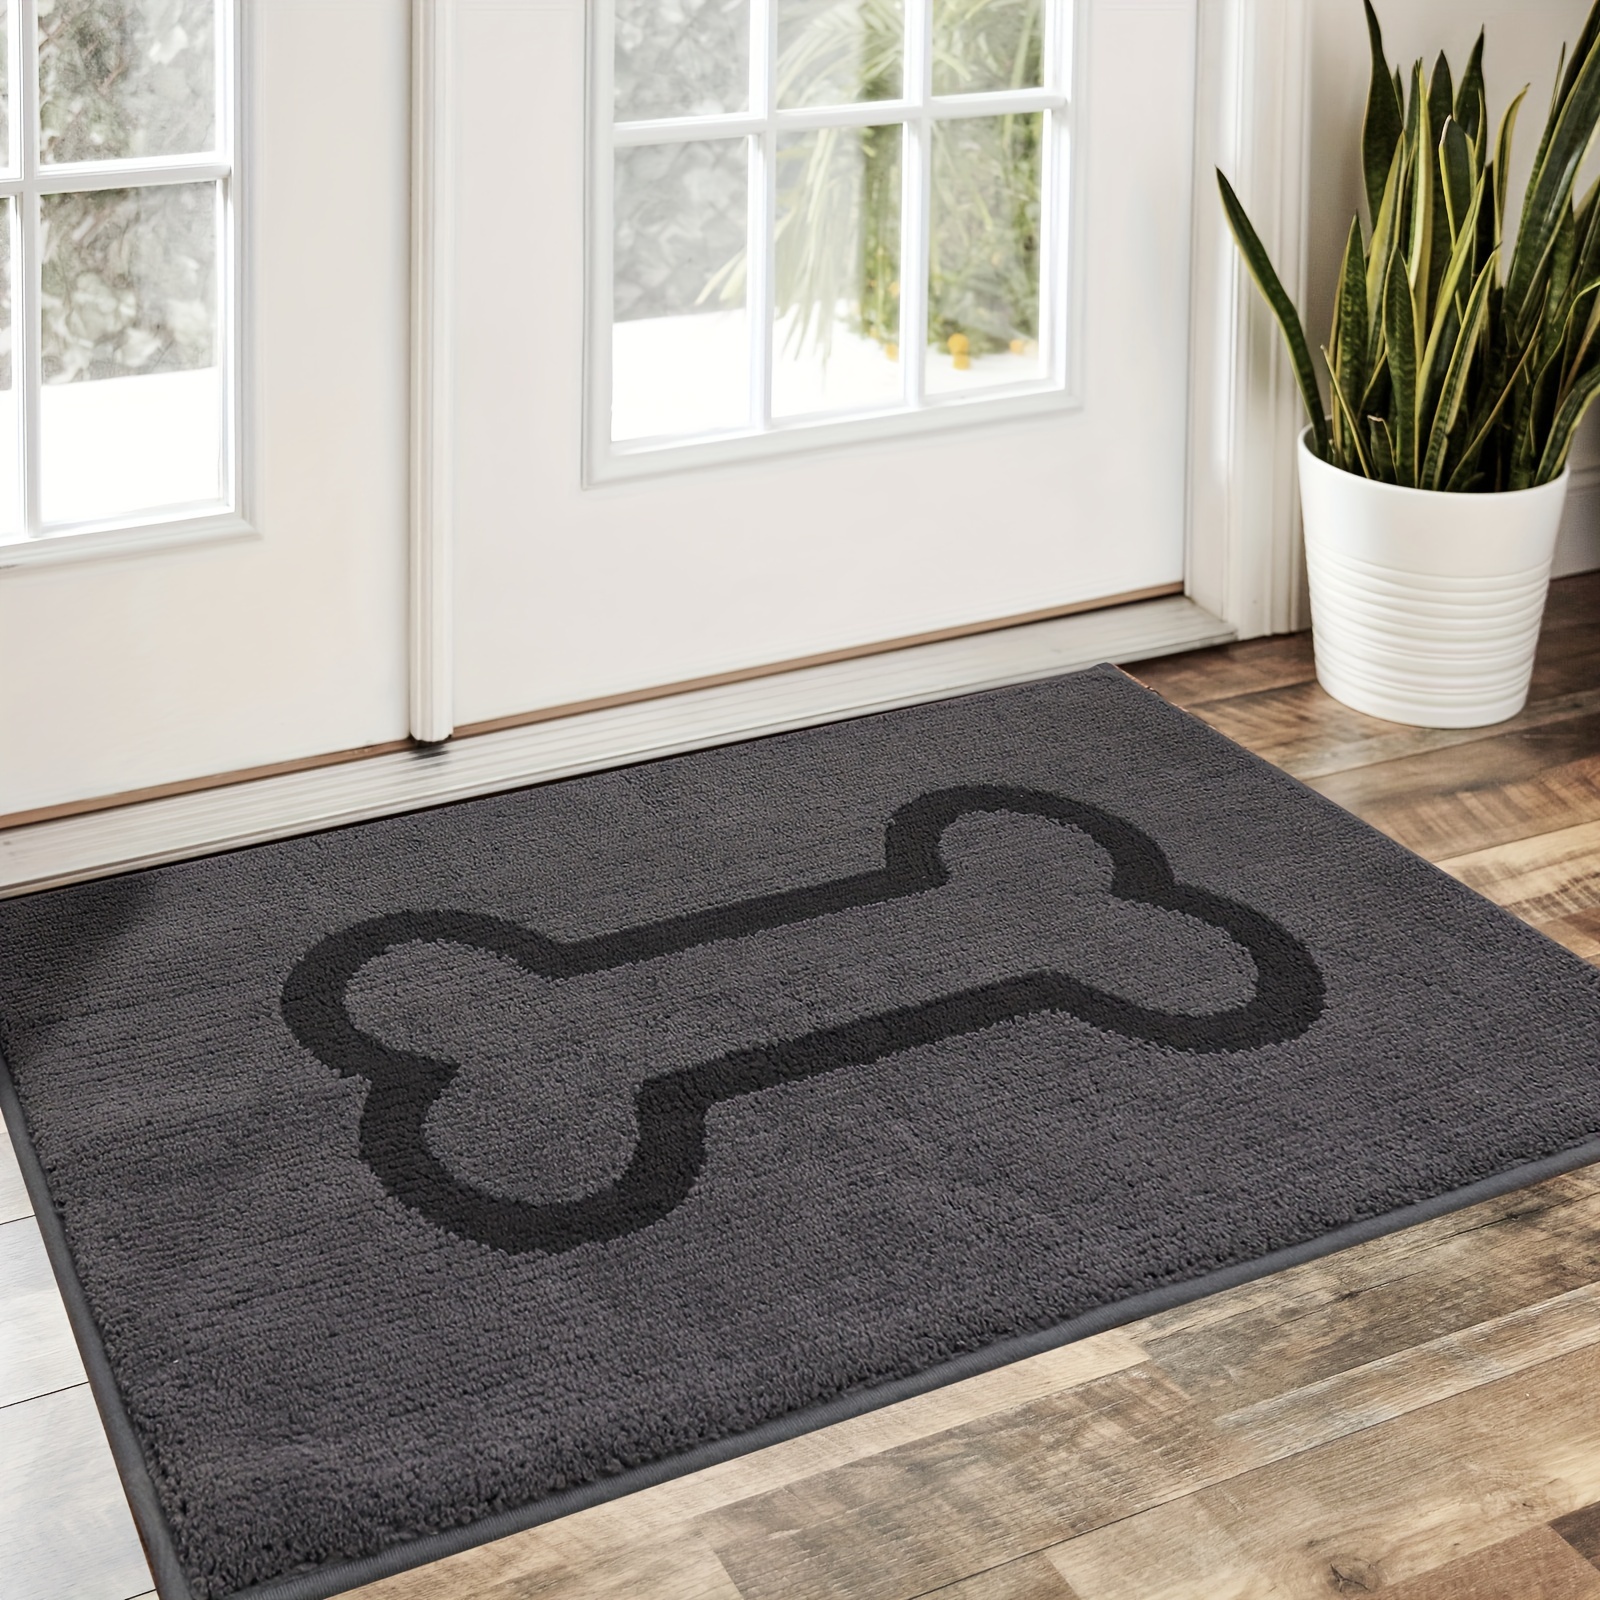 DEXI - Felpudo para puerta de entrada, alfombra de bienvenida, alfombra  interior, bajo perfil, antideslizante